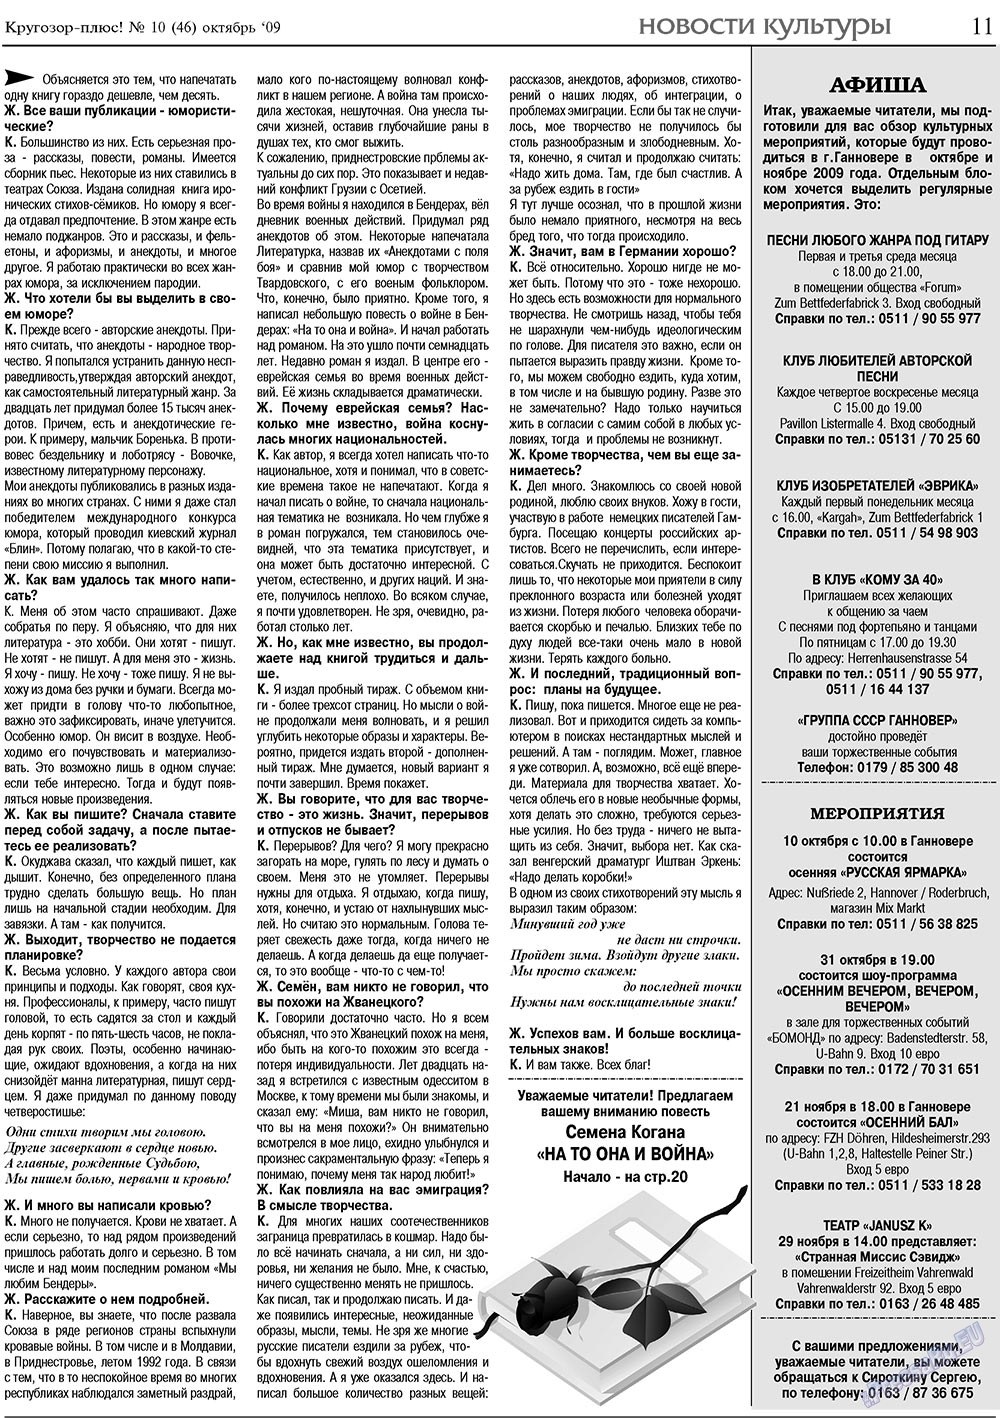 Кругозор плюс!, газета. 2009 №10 стр.11